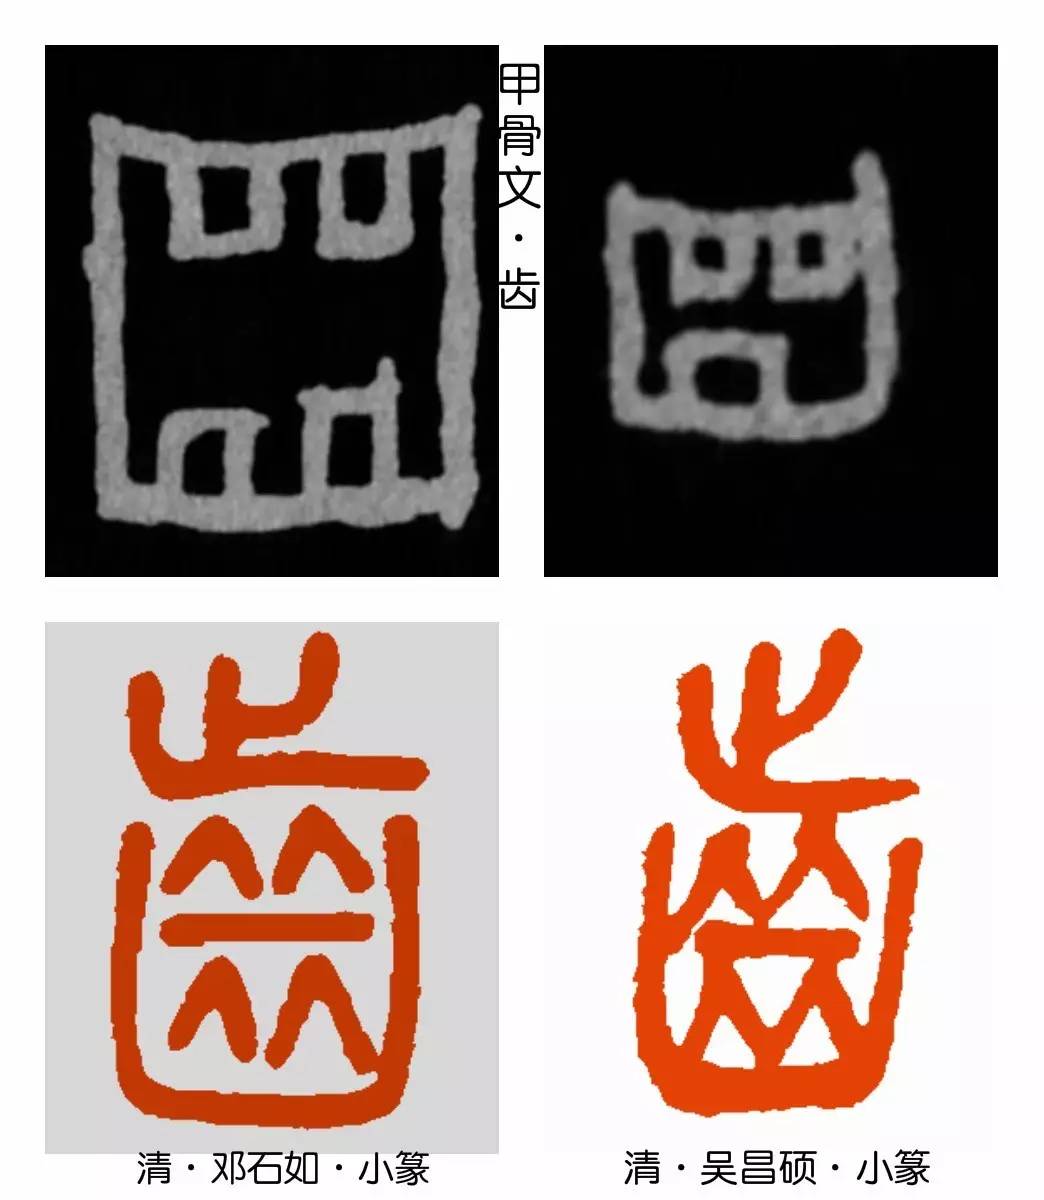 战国时铜器铭文才开始加注音符"止","齿"于是由象形字变成了形声字.